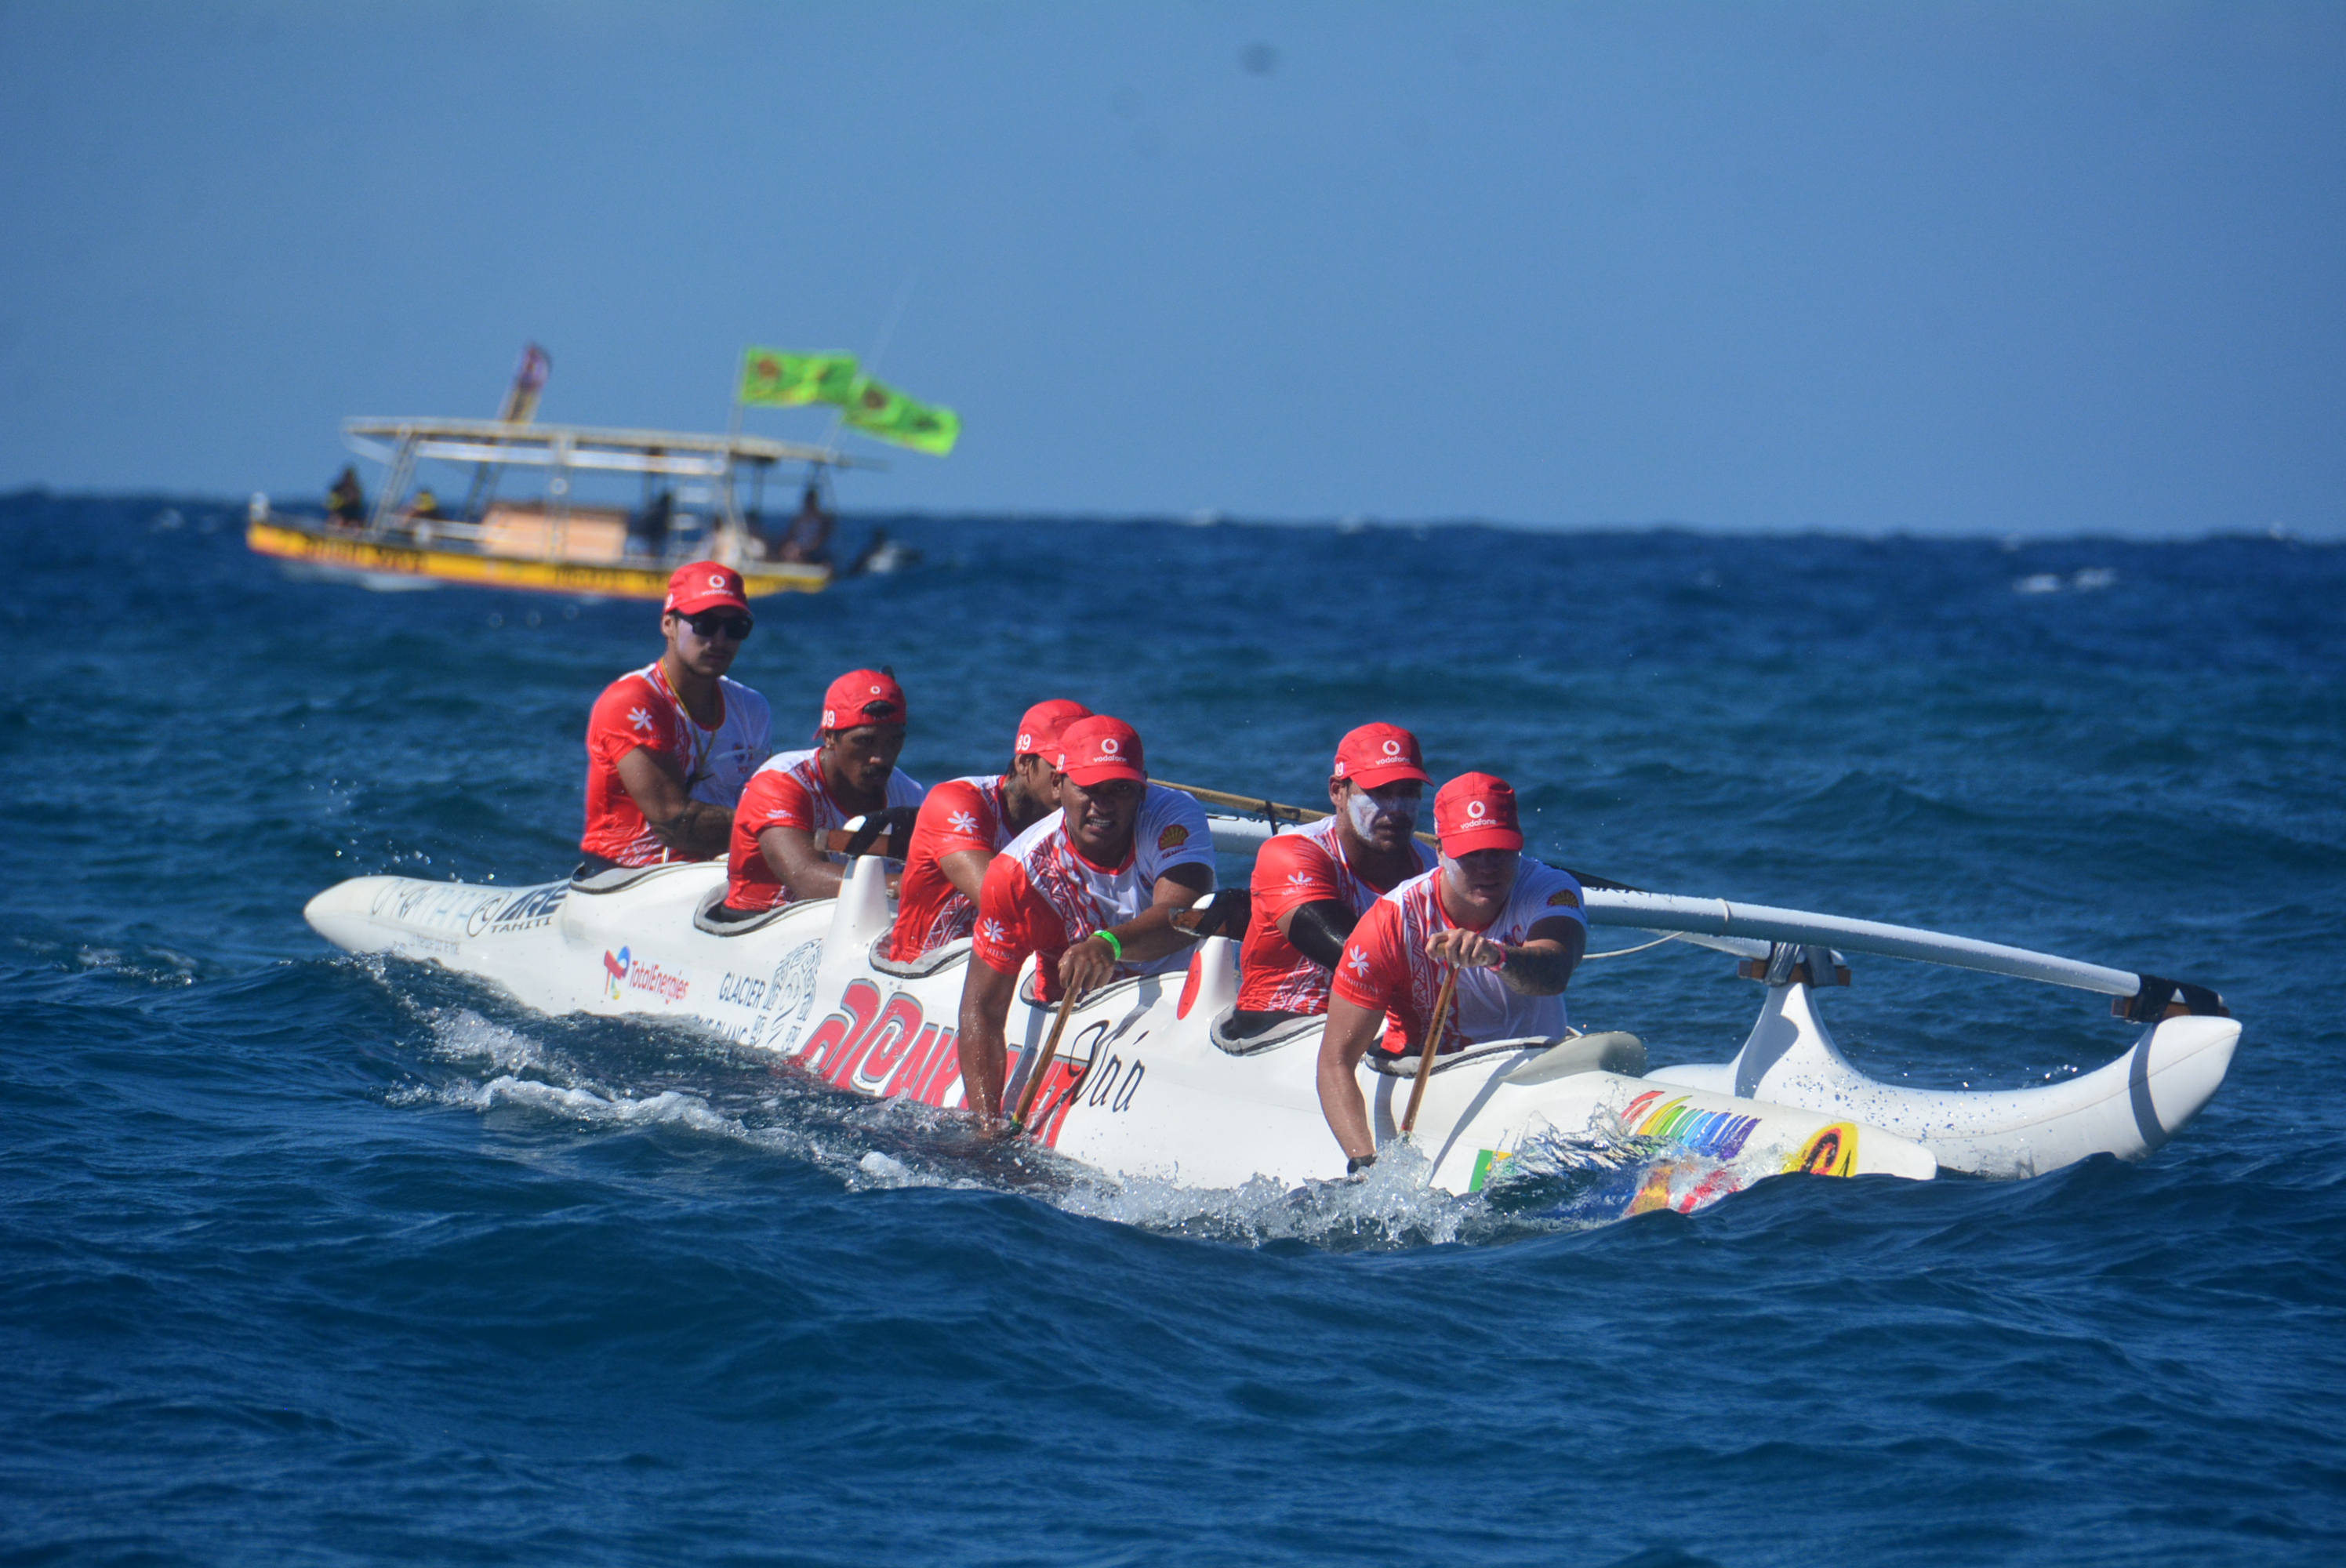 Renforcé par les prêts de Manarii Flores (ici au poste 3) et de Hititua Taerea, Air Tahiti s'est offert la deuxième place de la course samedi.